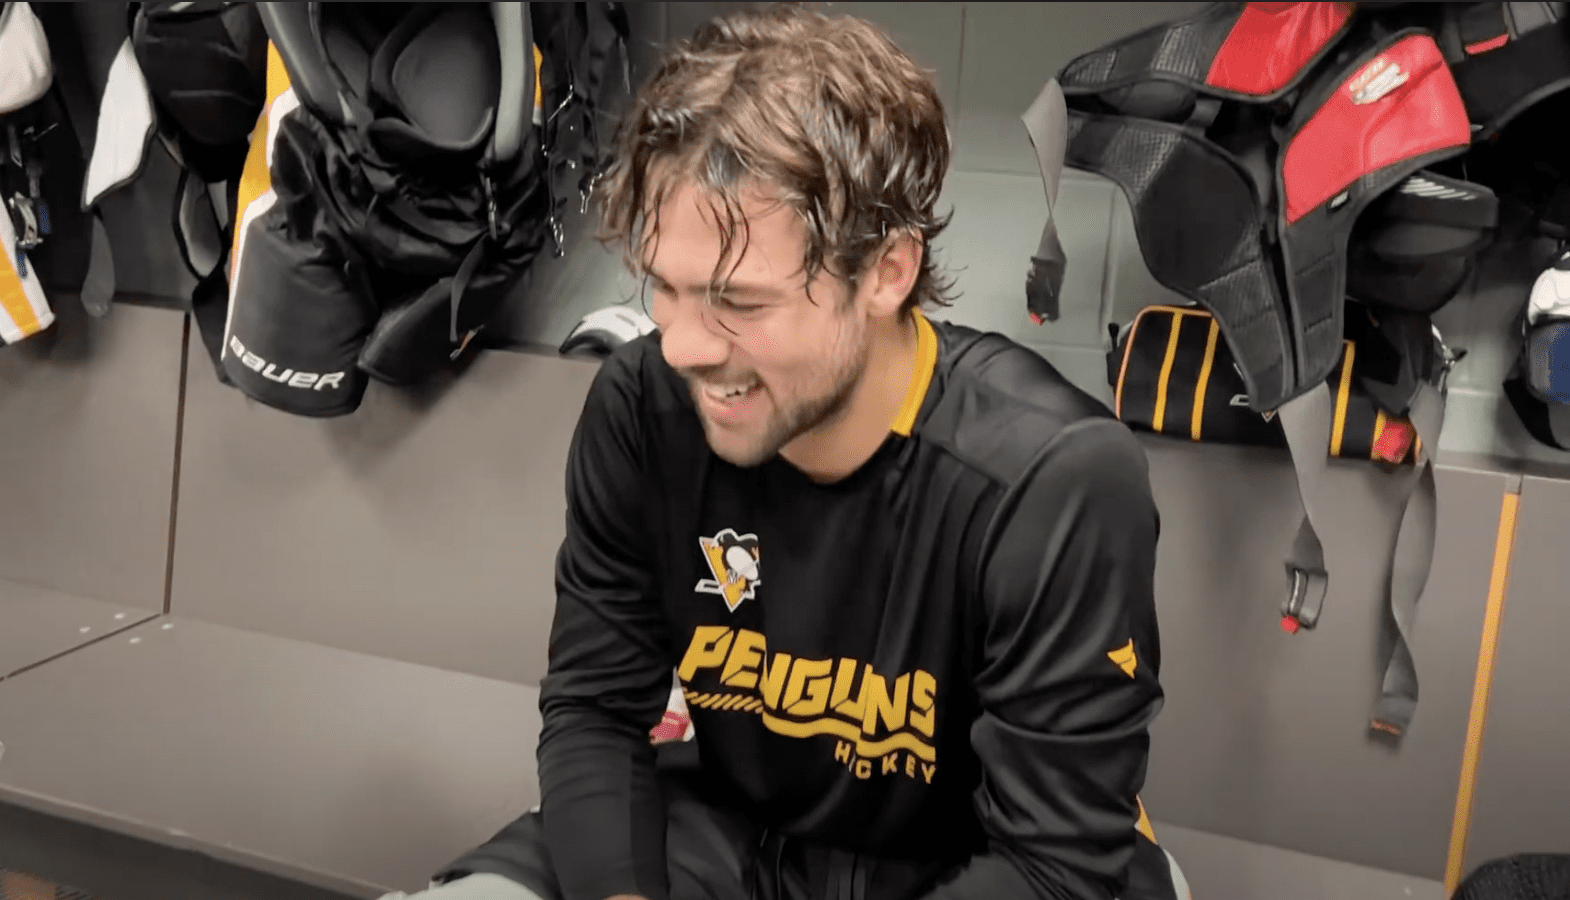 Pittsburgh Penguins, Ryan Poehling